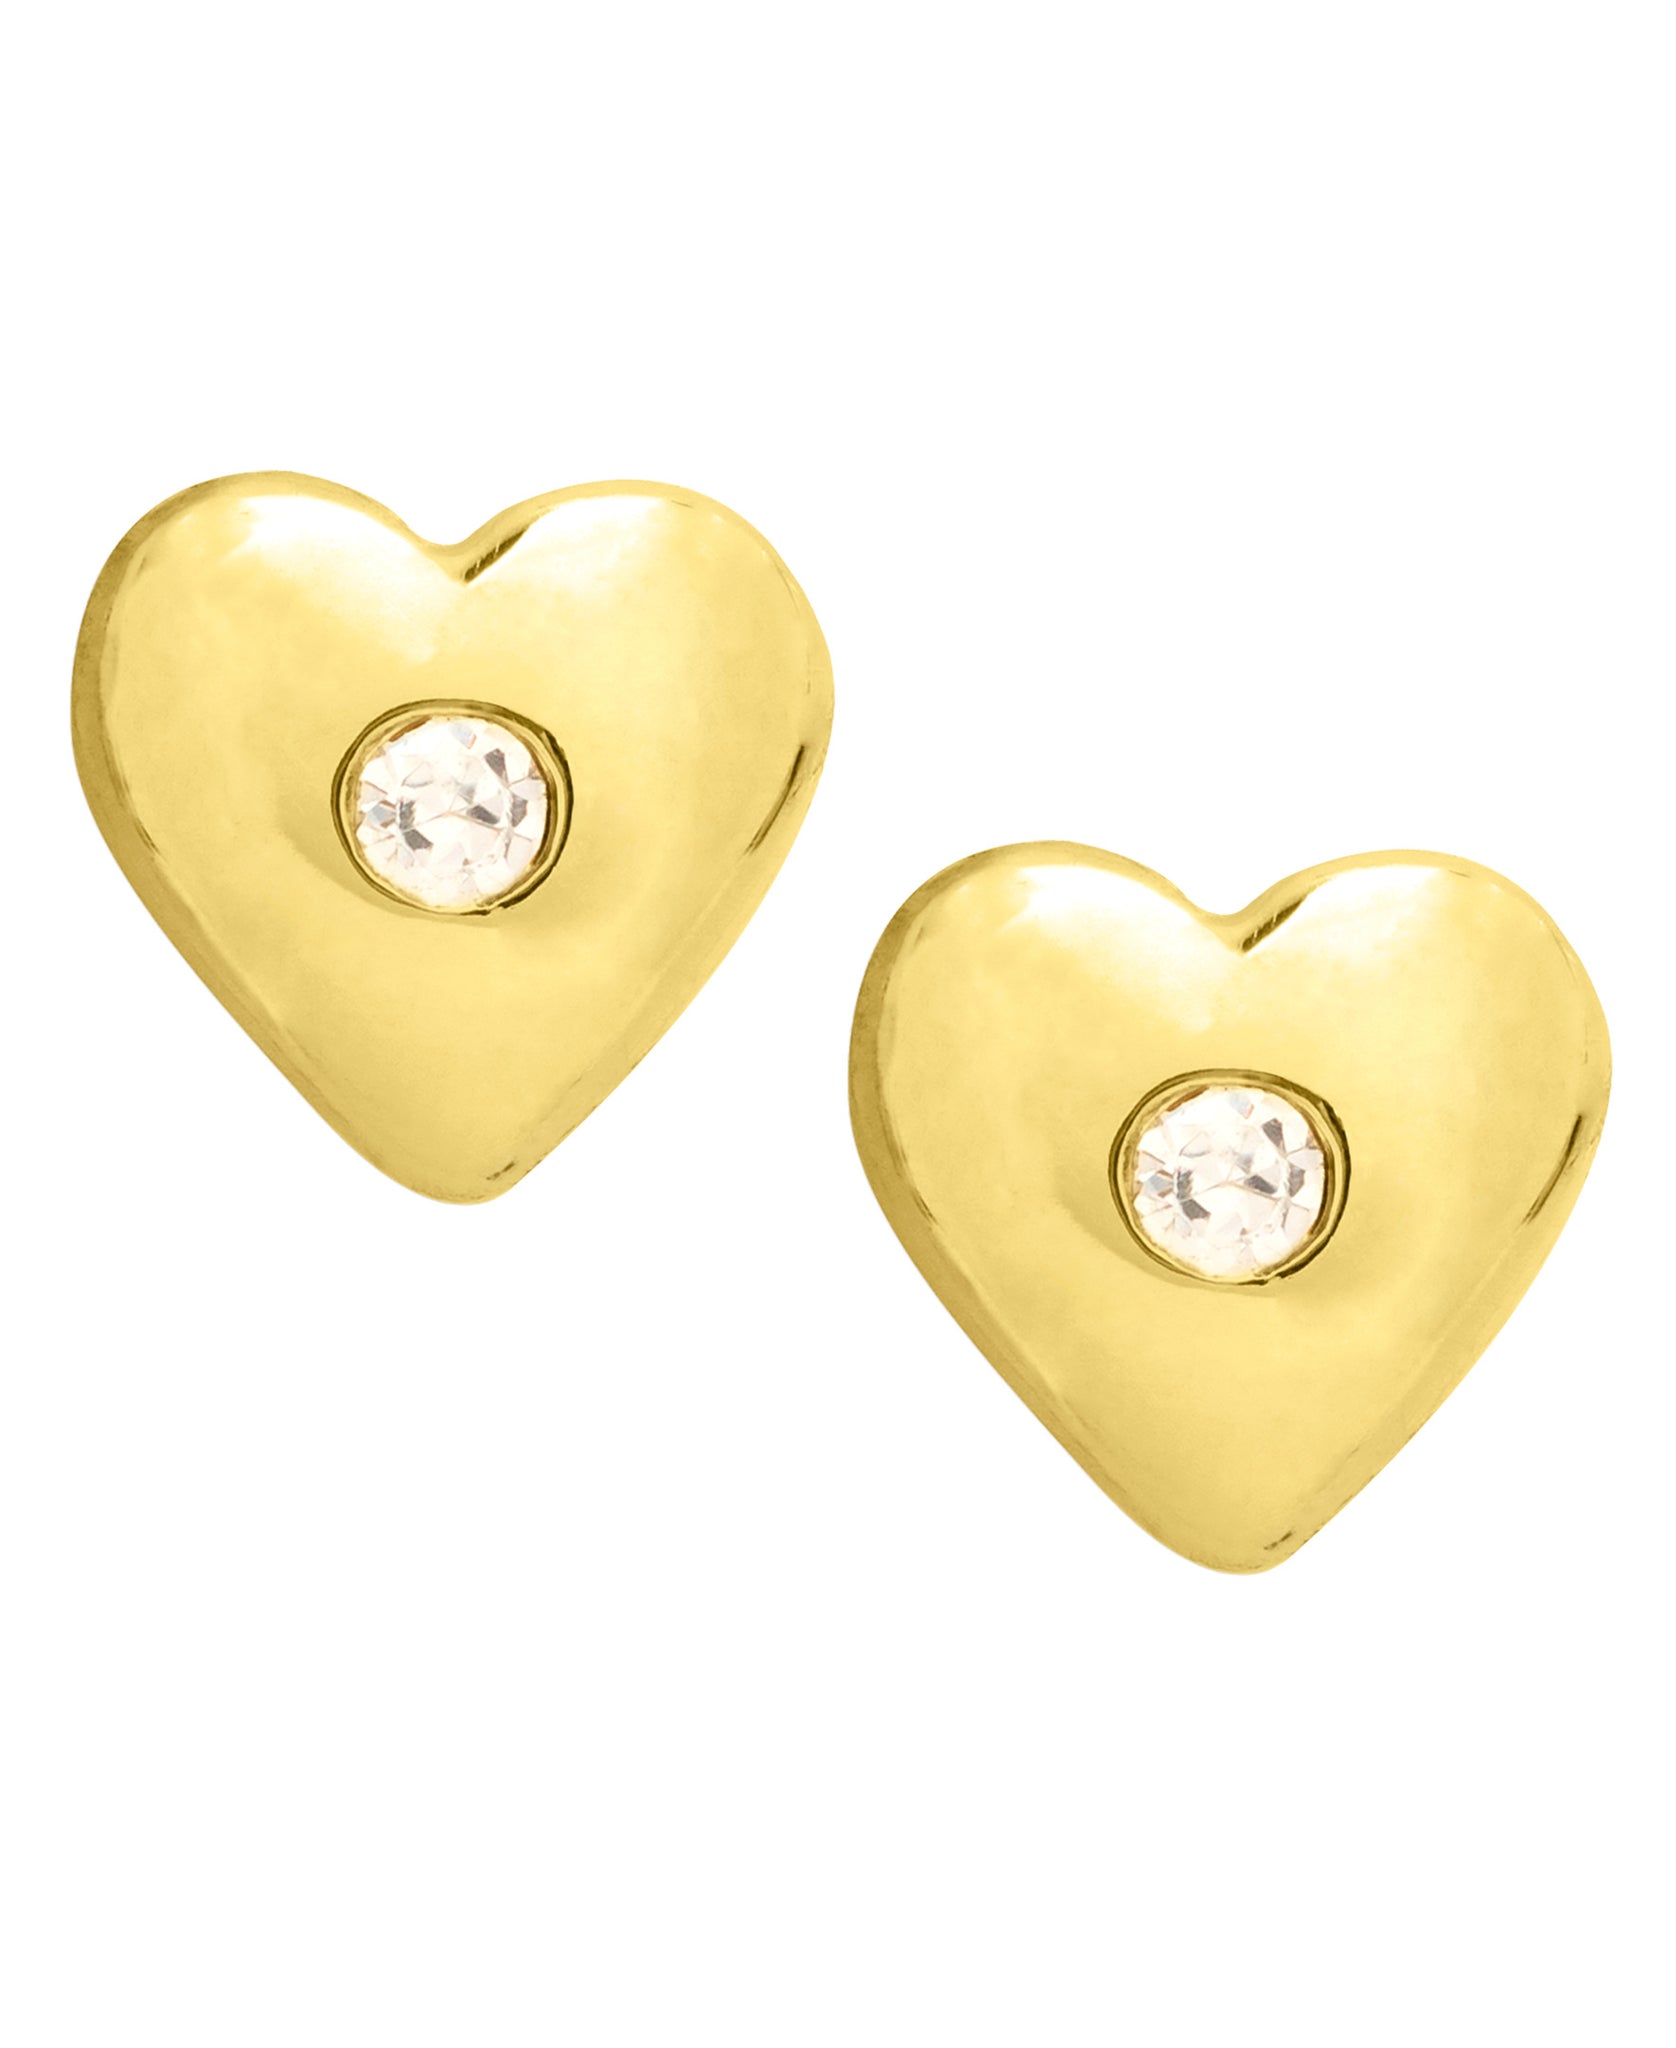 Children's 10K Gold & Cubic Zirconia Heart Stud Earrings - Rhona Sutton Jewellery